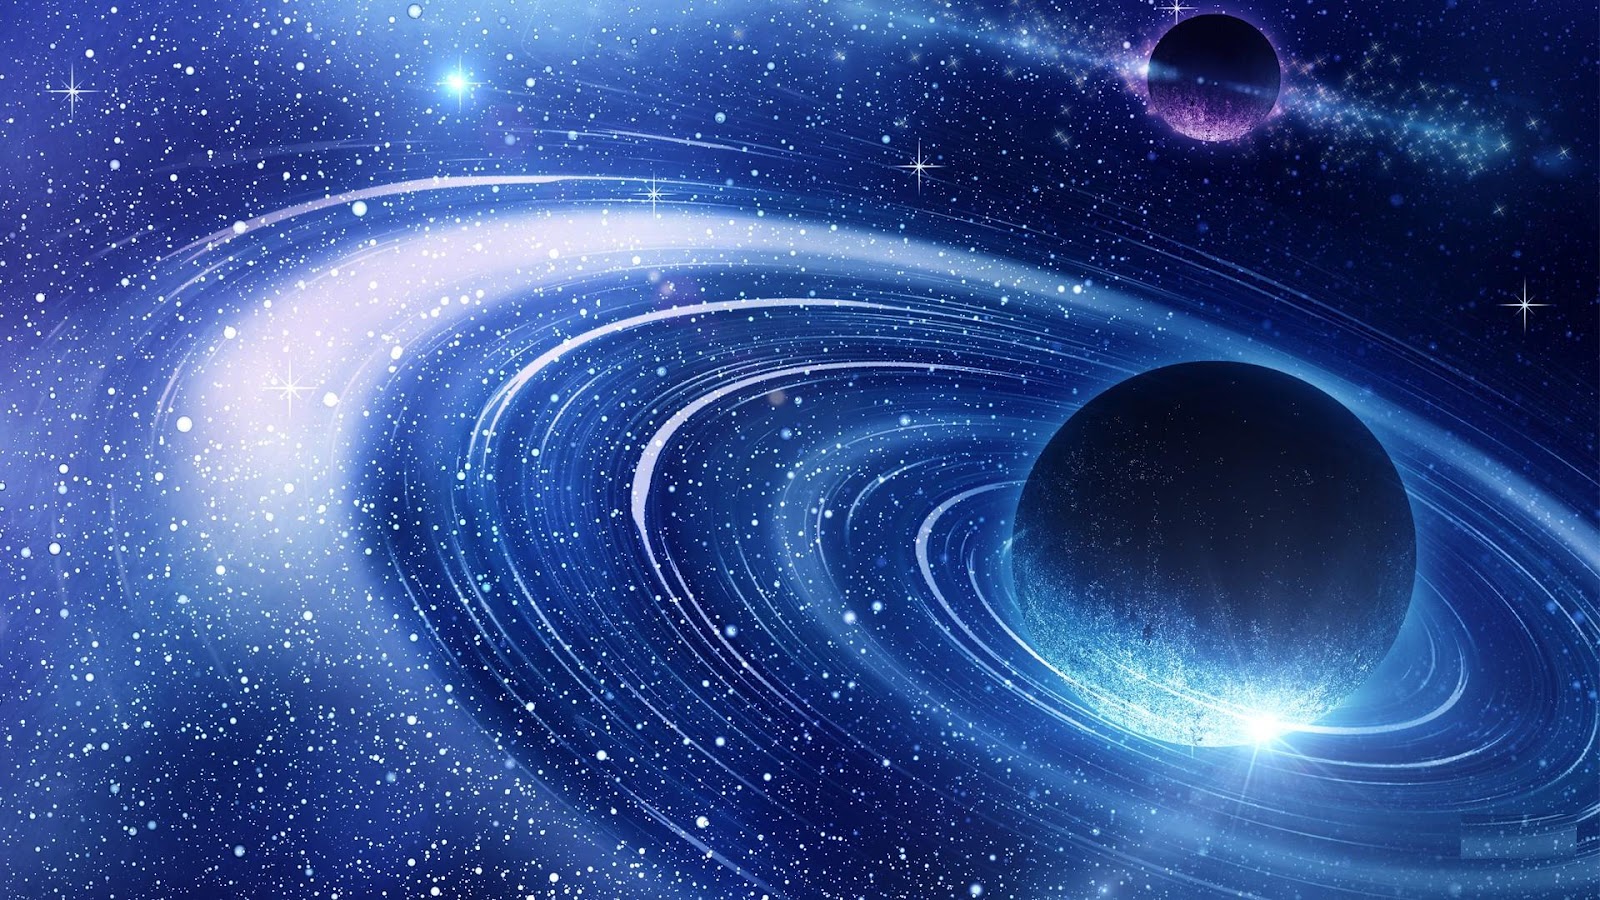 fond d'écran galaxy 1920x1080,cosmos,bleu,univers,atmosphère,objet astronomique